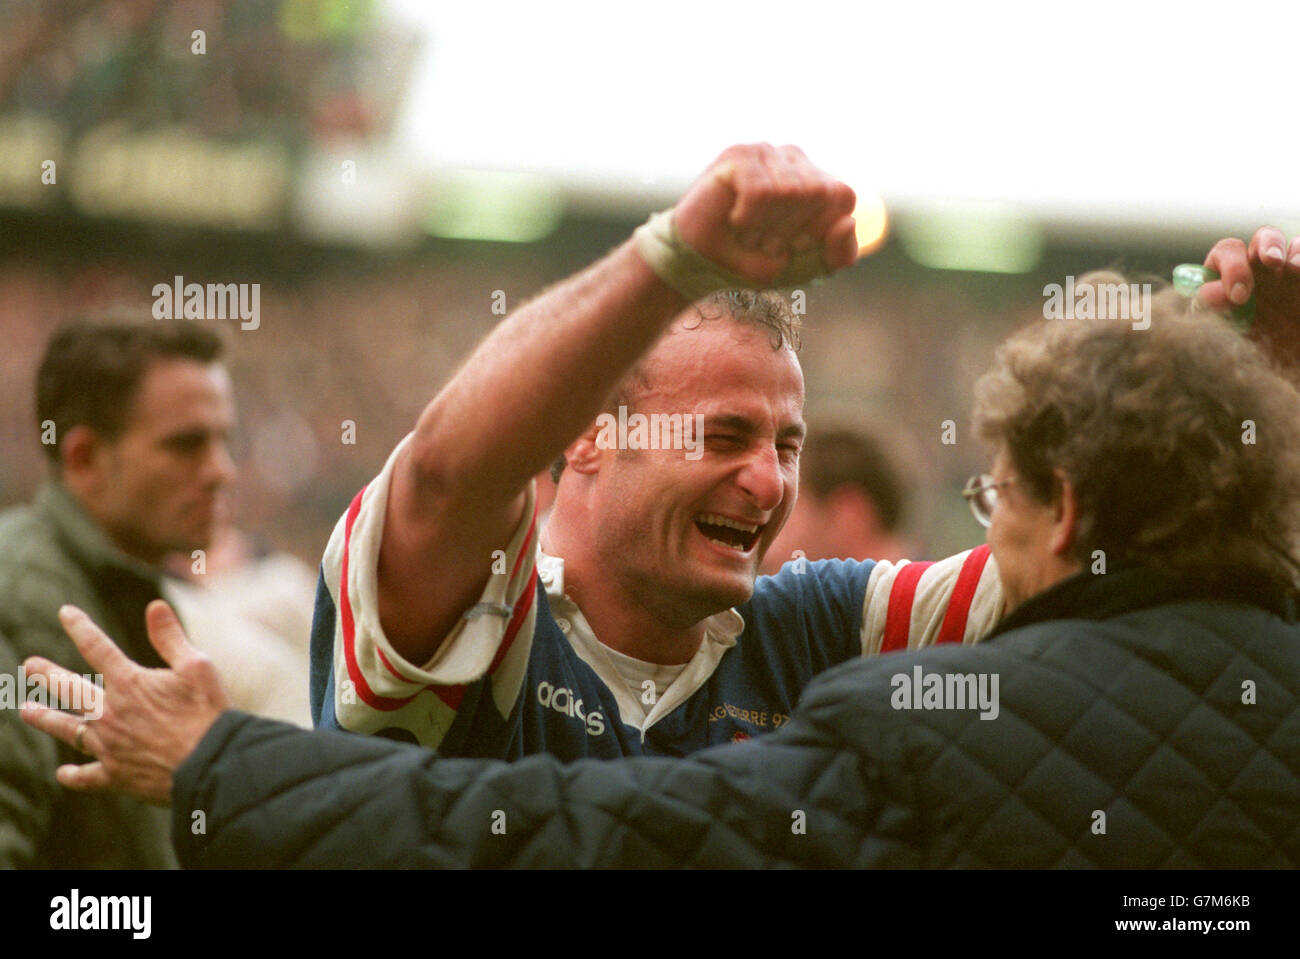 5 Nations Rugby Union - Angleterre / France.Marc del Maso, France, célèbre la victoire sur l'Angleterre Banque D'Images